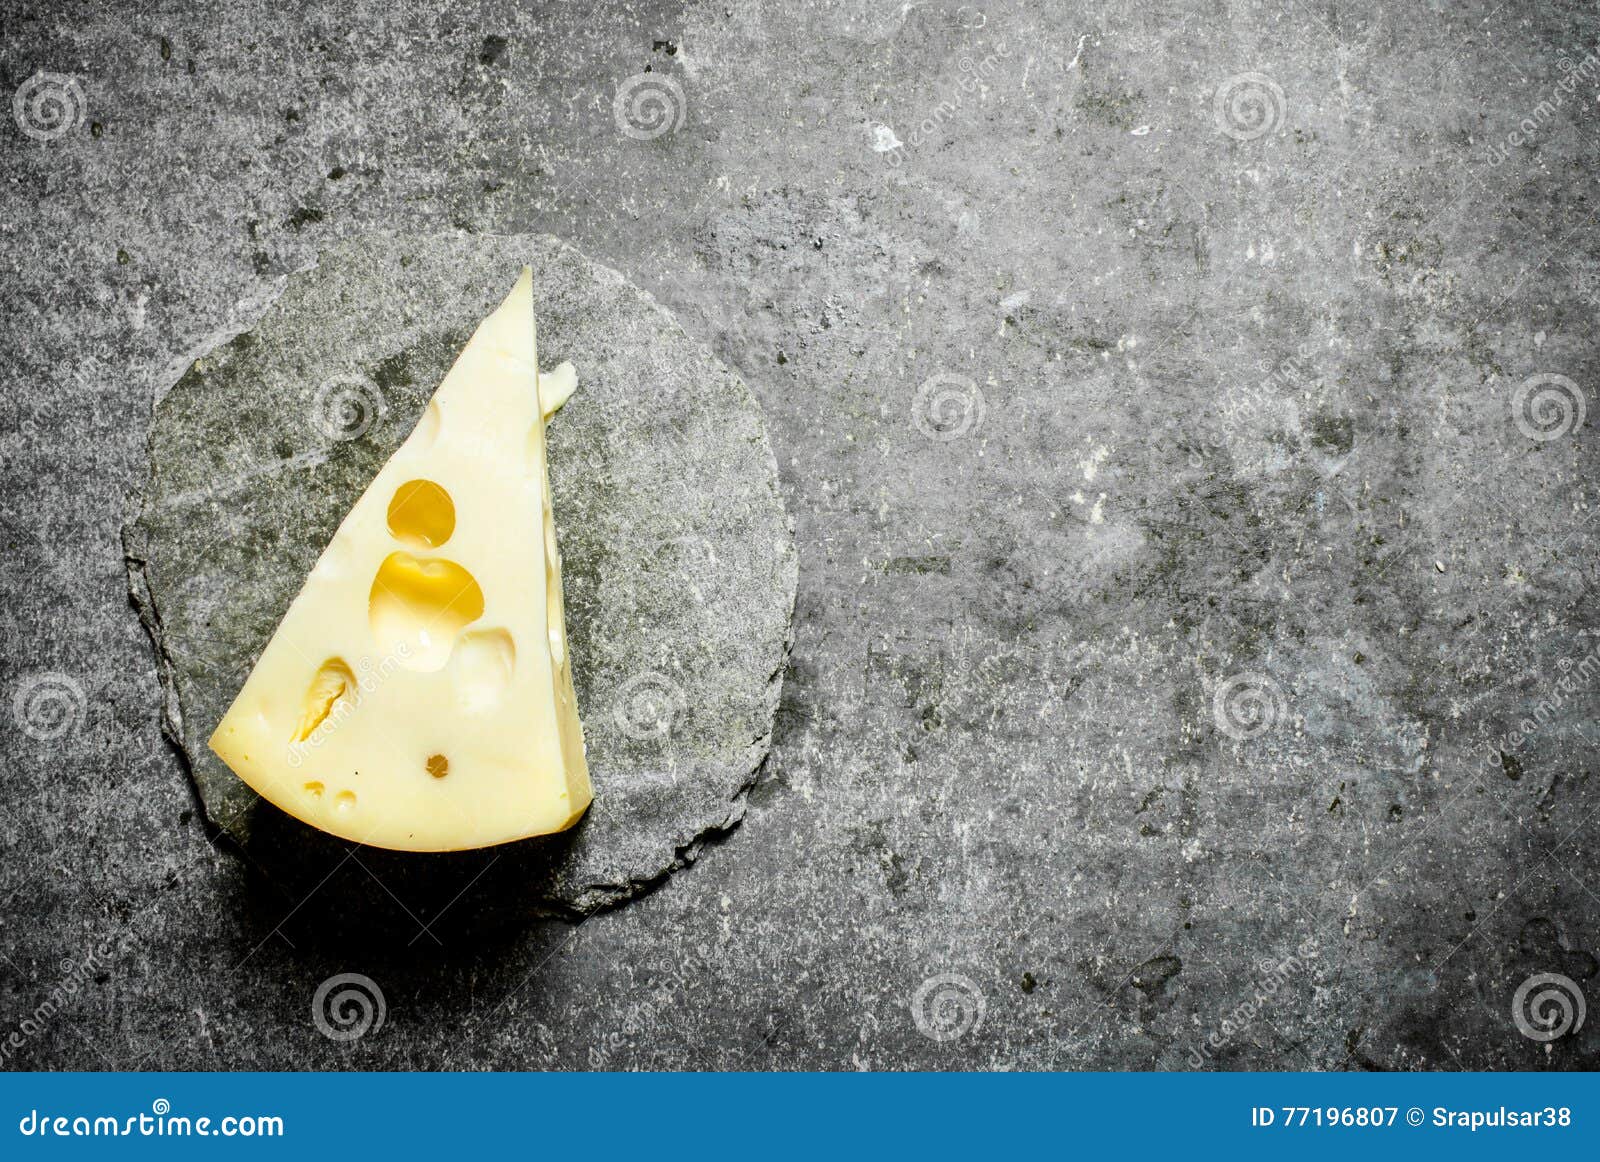 Кусочек маленький кусочек видео. Маленький кусочек сыра. Кусочек сыра на черном фоне. Кусочек сыра на столе. Красивый кусок сыра.